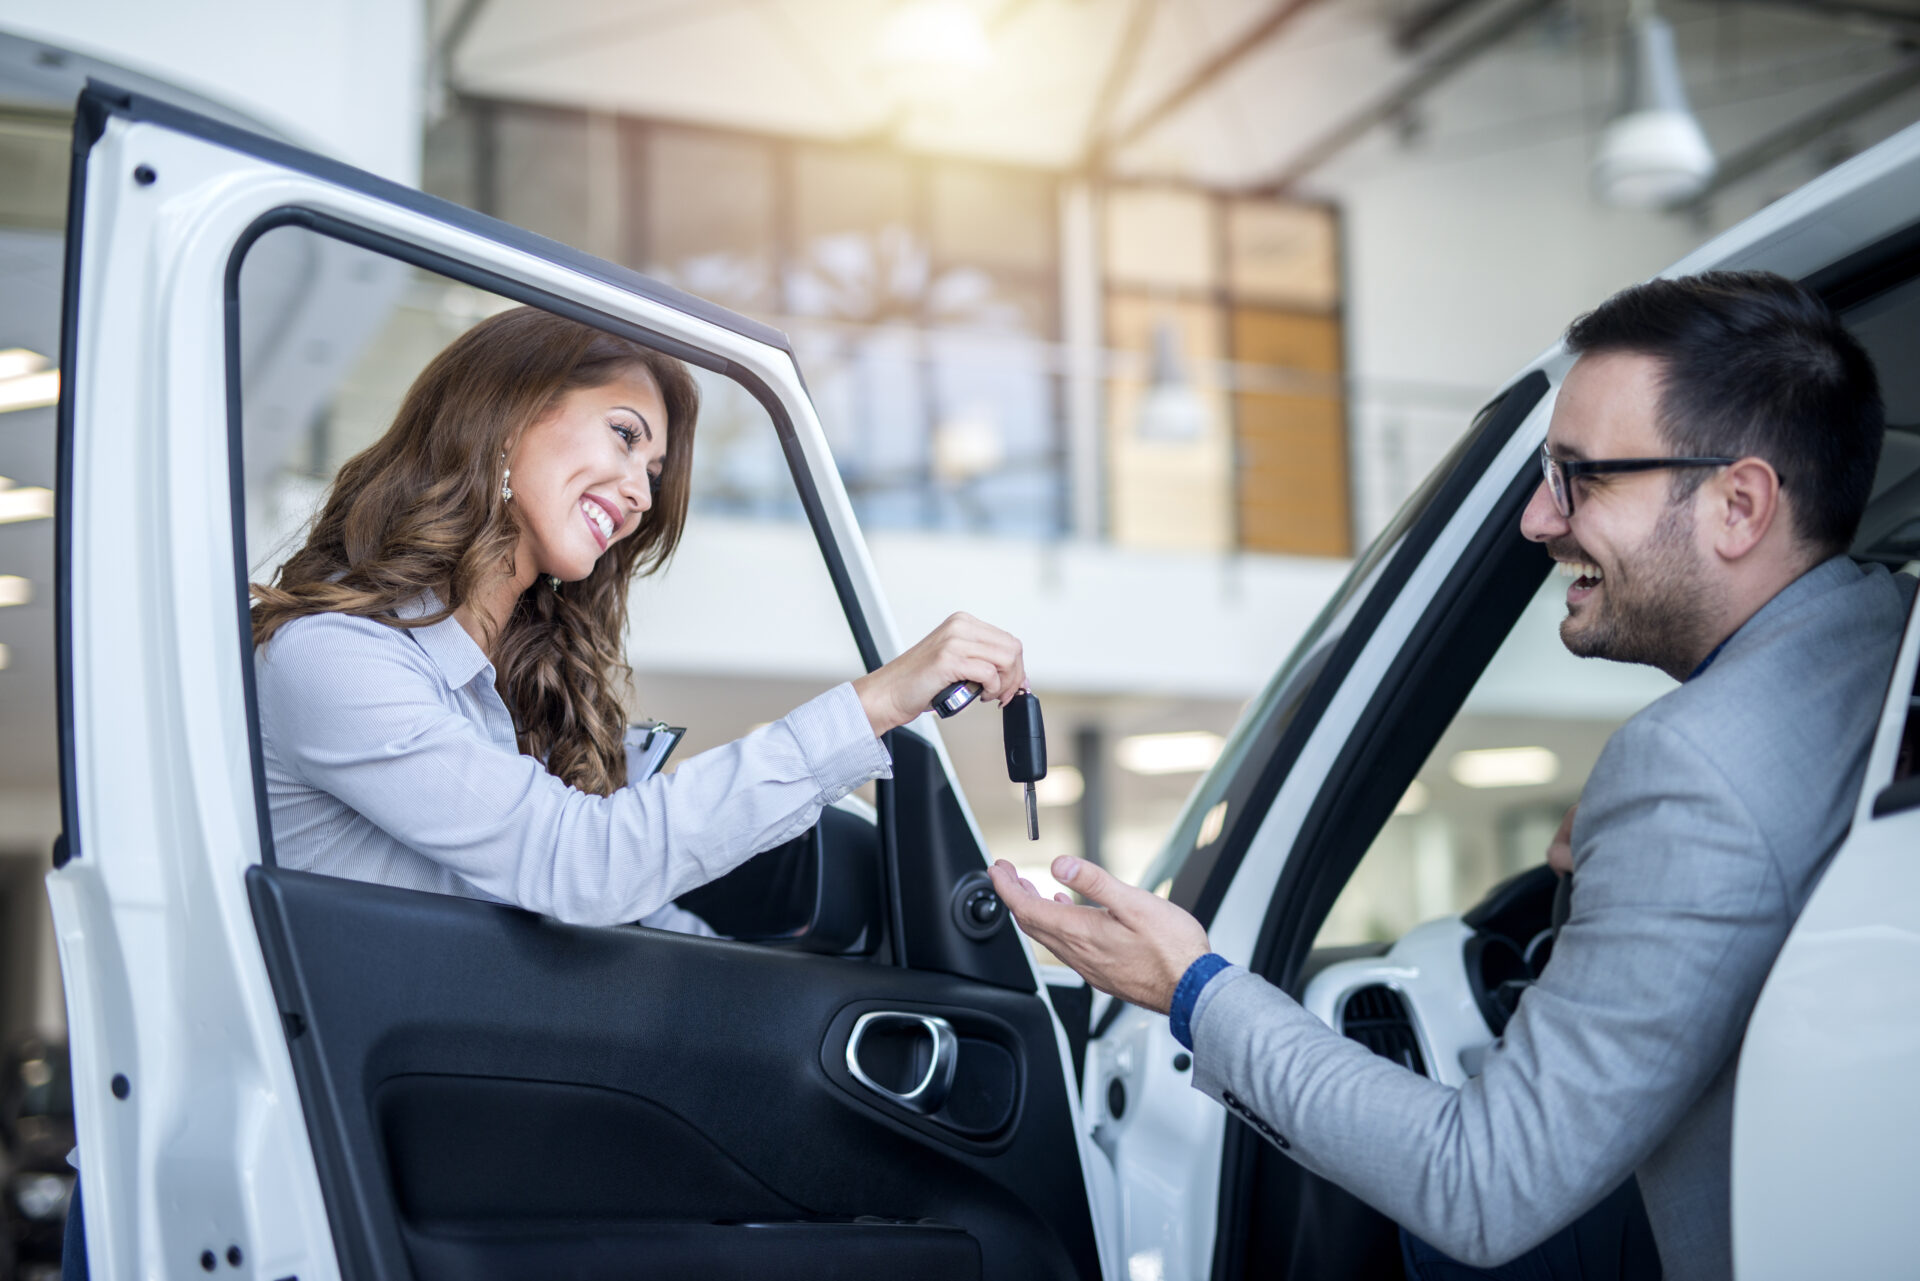 O que o consumidor pensa na hora de comprar carro?